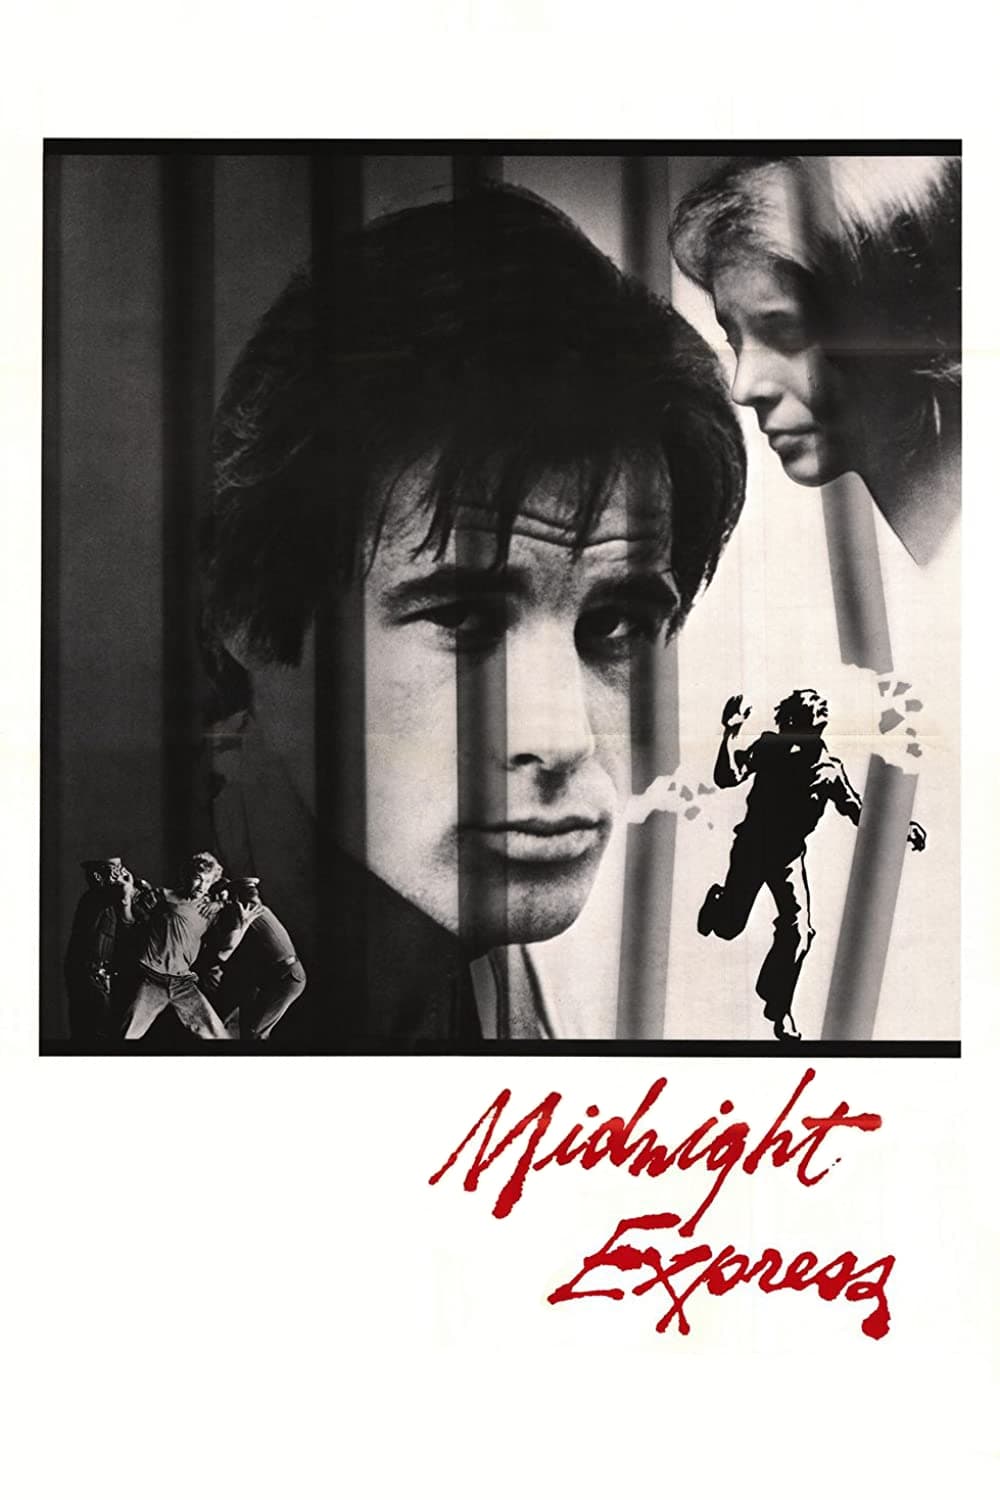 12 Uhr nachts - Midnight Express (1978)